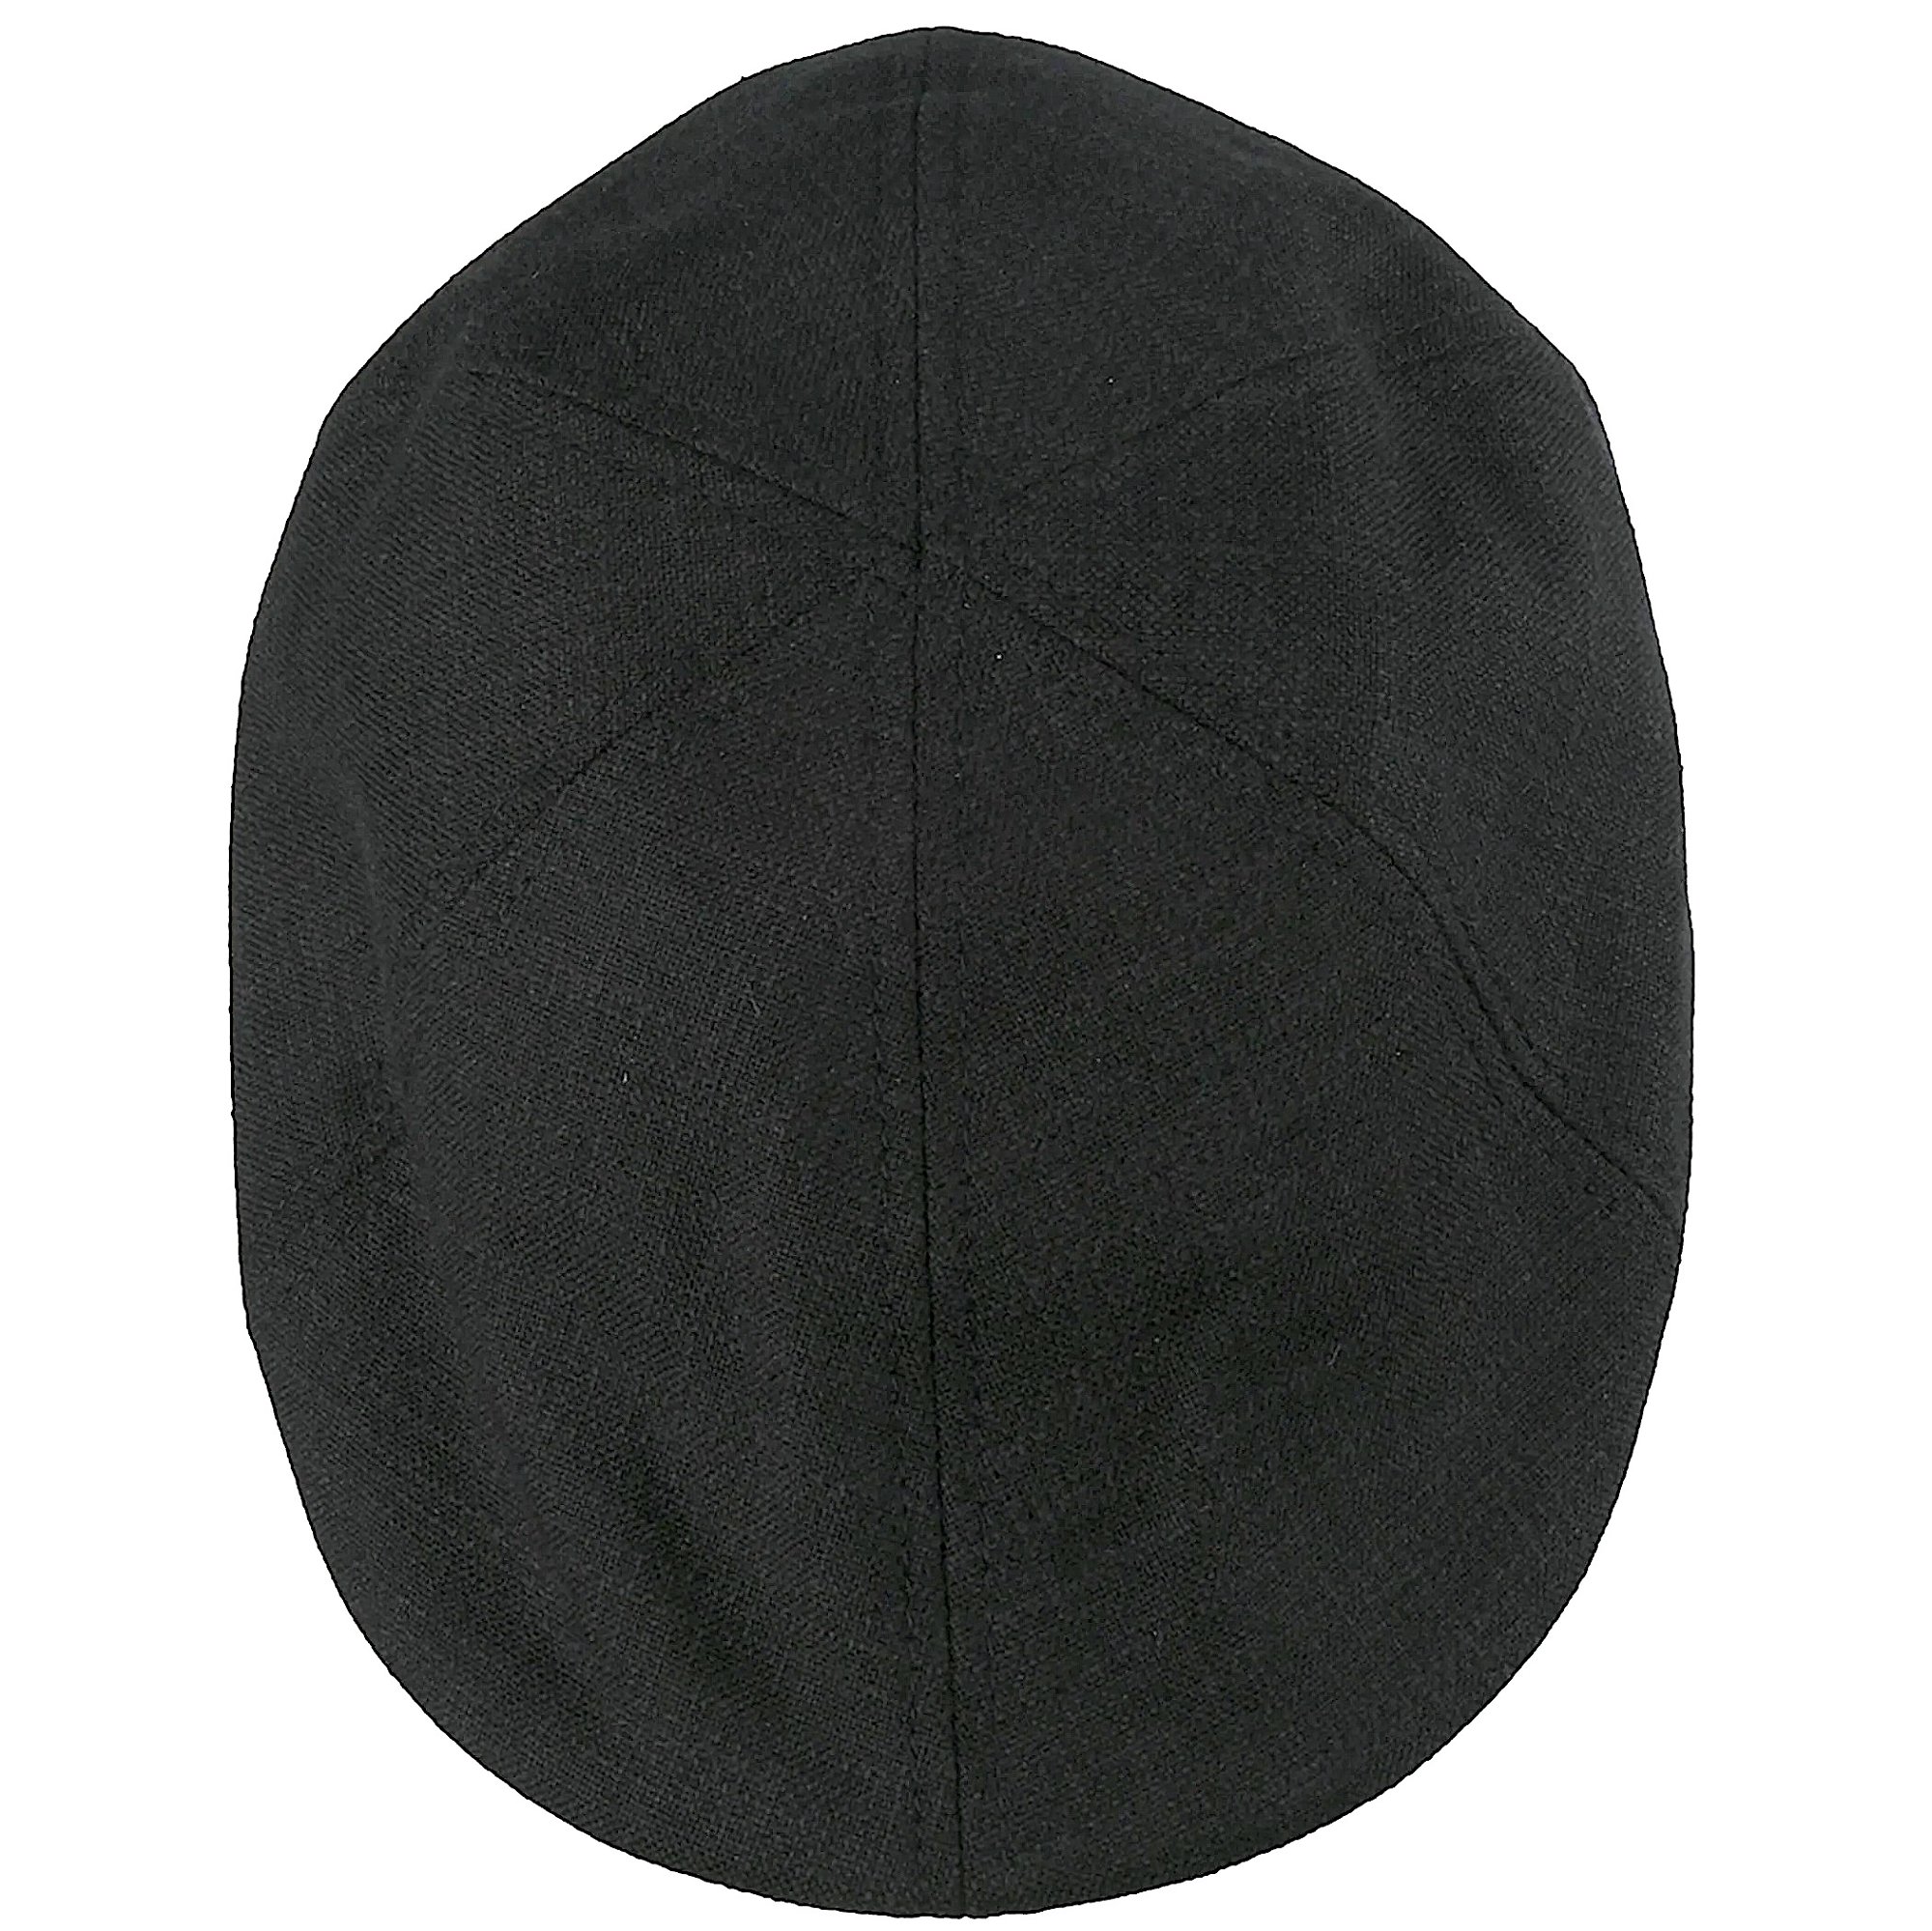 Sommer Flatcap Schiebermütze im modernen Gatsbystil, schwarz